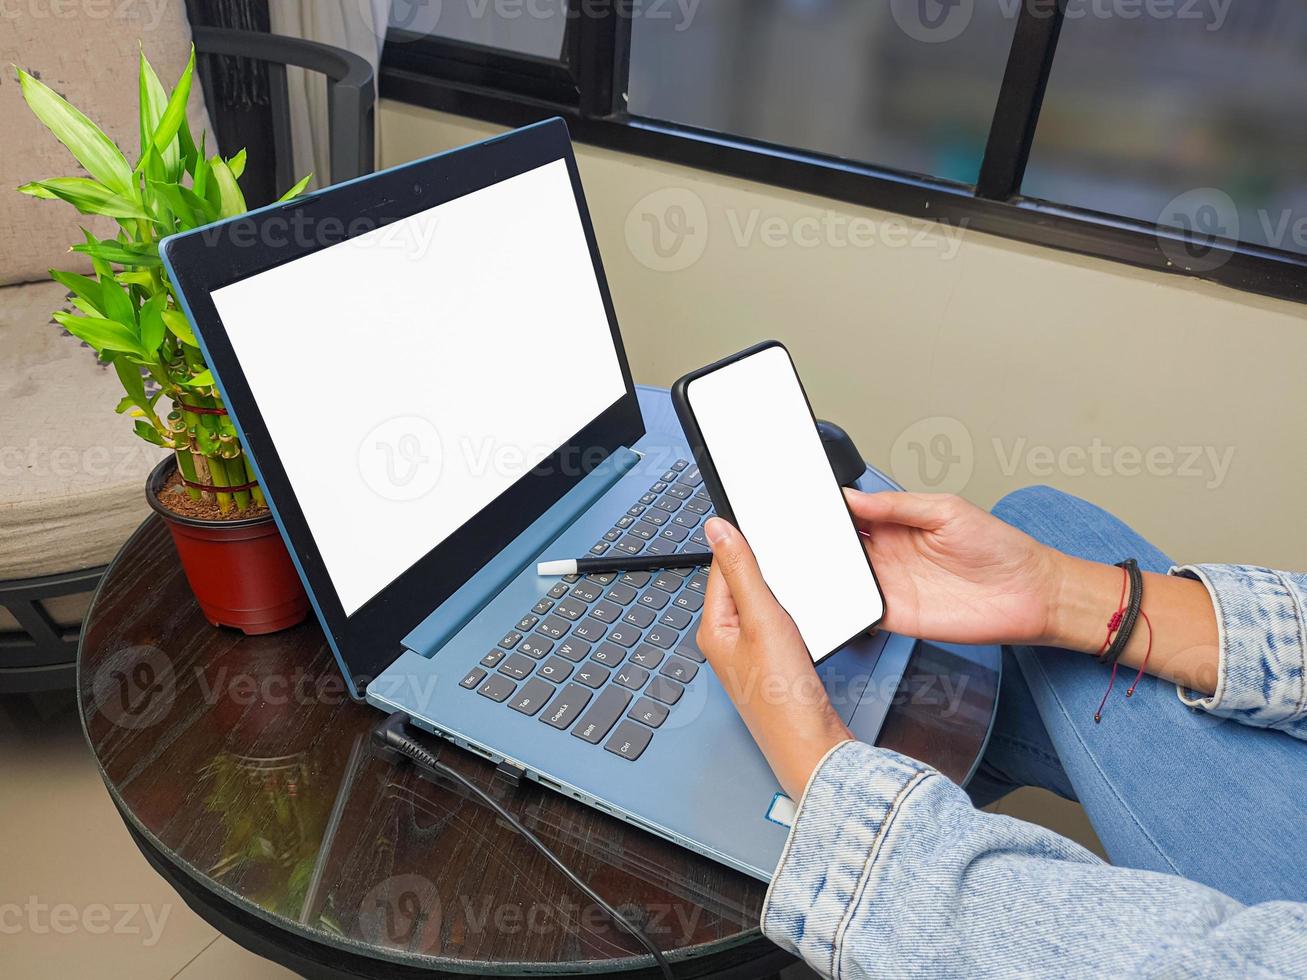 computador, imagem de maquete de telefone de tela em branco com fundo branco para publicidade, mão de mulher usando laptop e celular na mesa em cafe.mockup foto